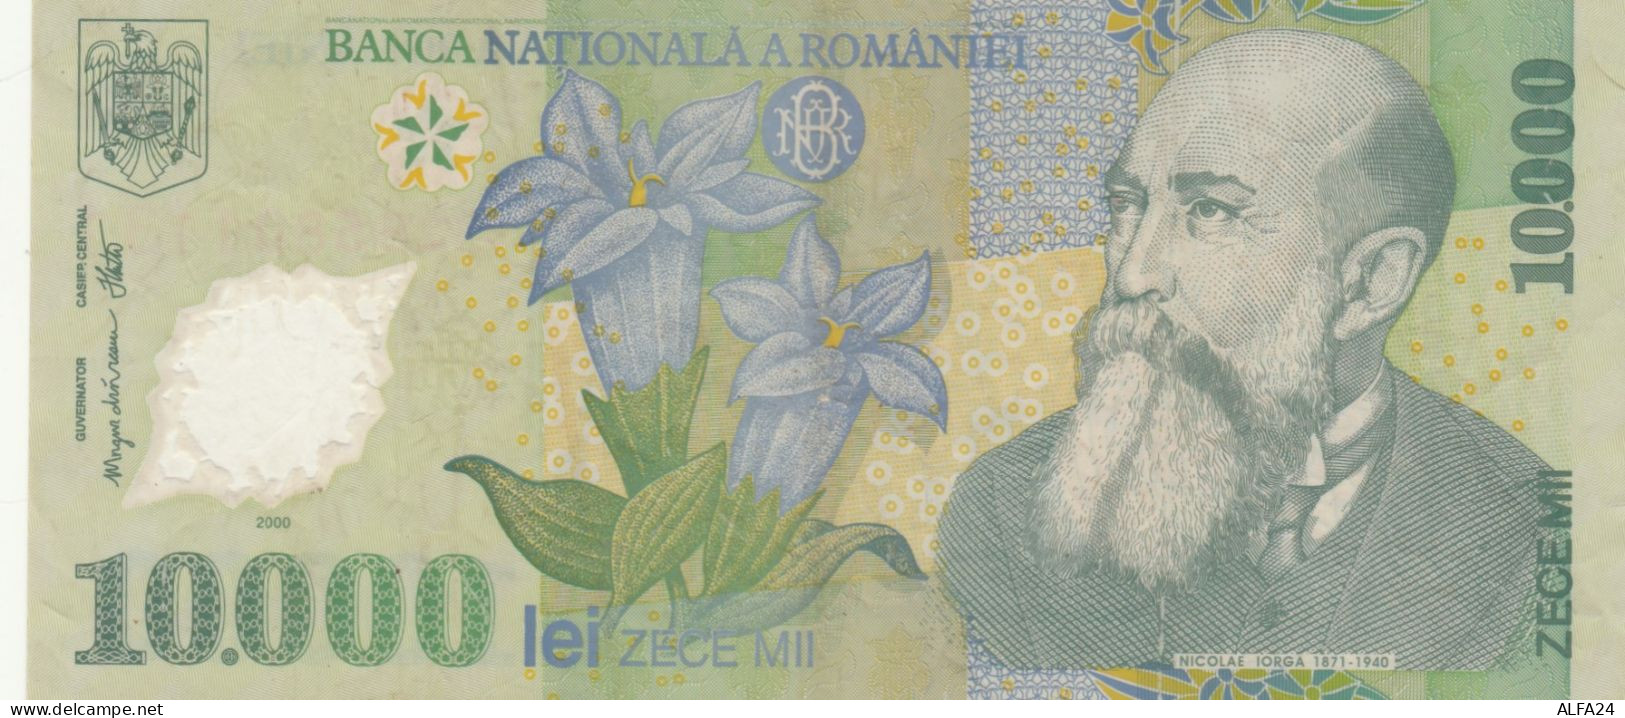 BANCONOTA ROMANIA 10000 LEI VF (HB361 - Roumanie